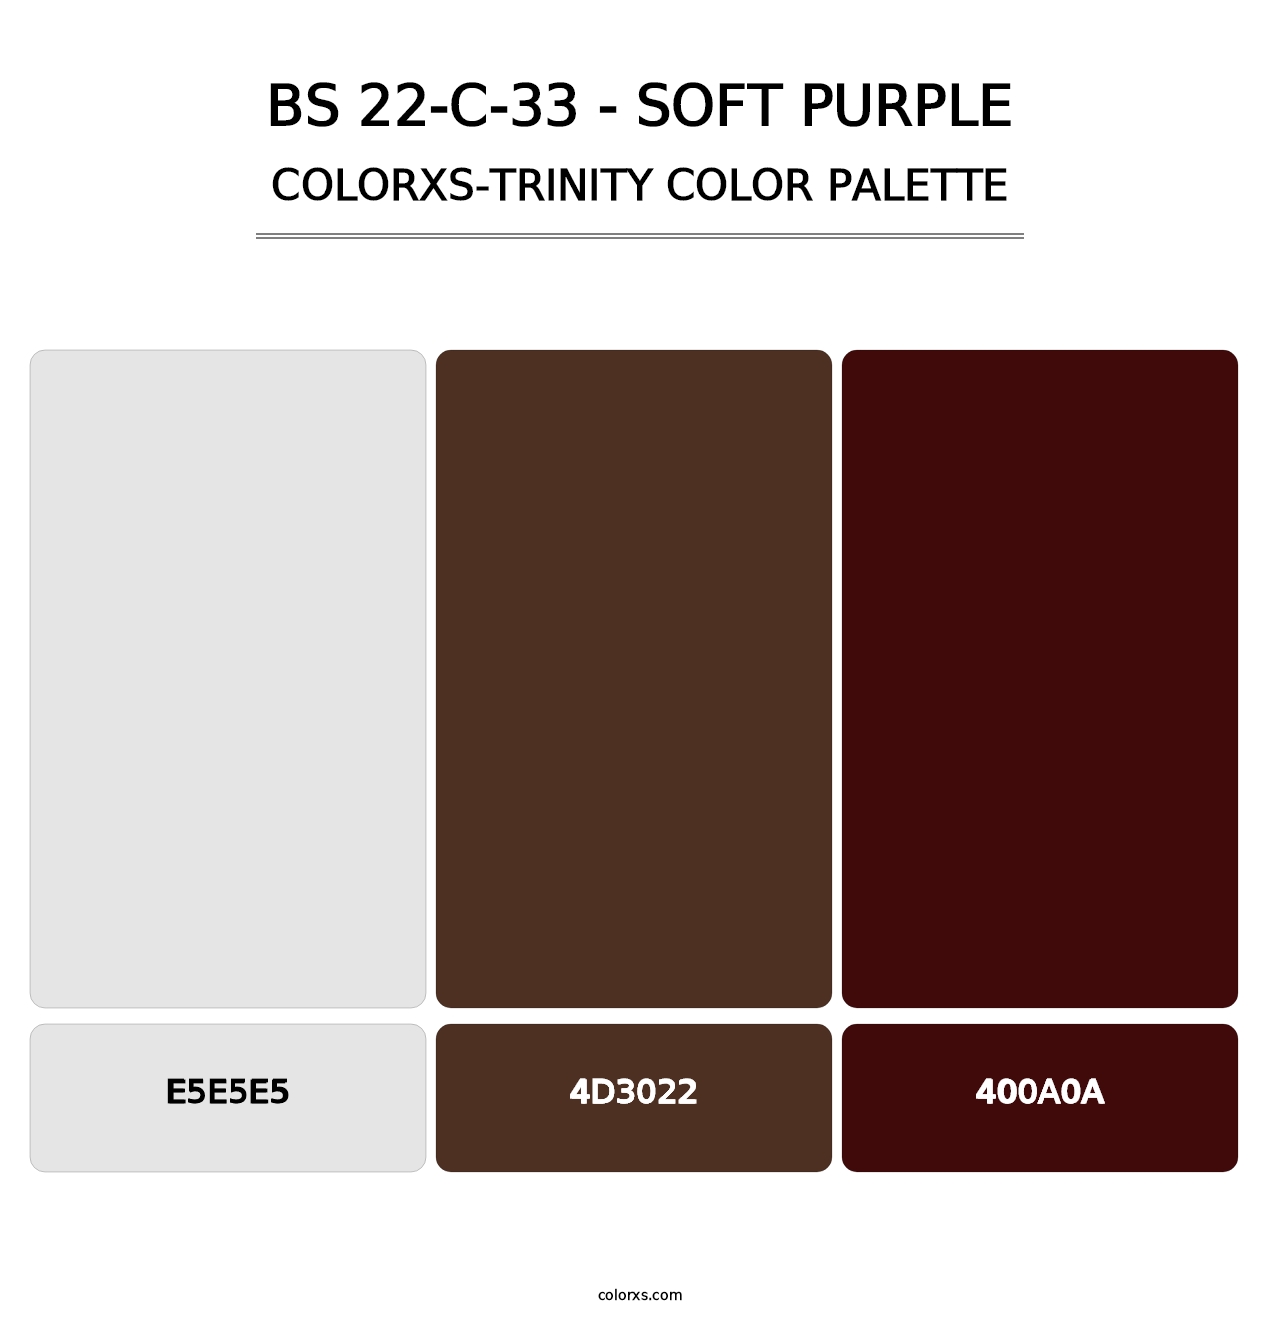 BS 22-C-33 - Soft Purple - Colorxs Trinity Palette